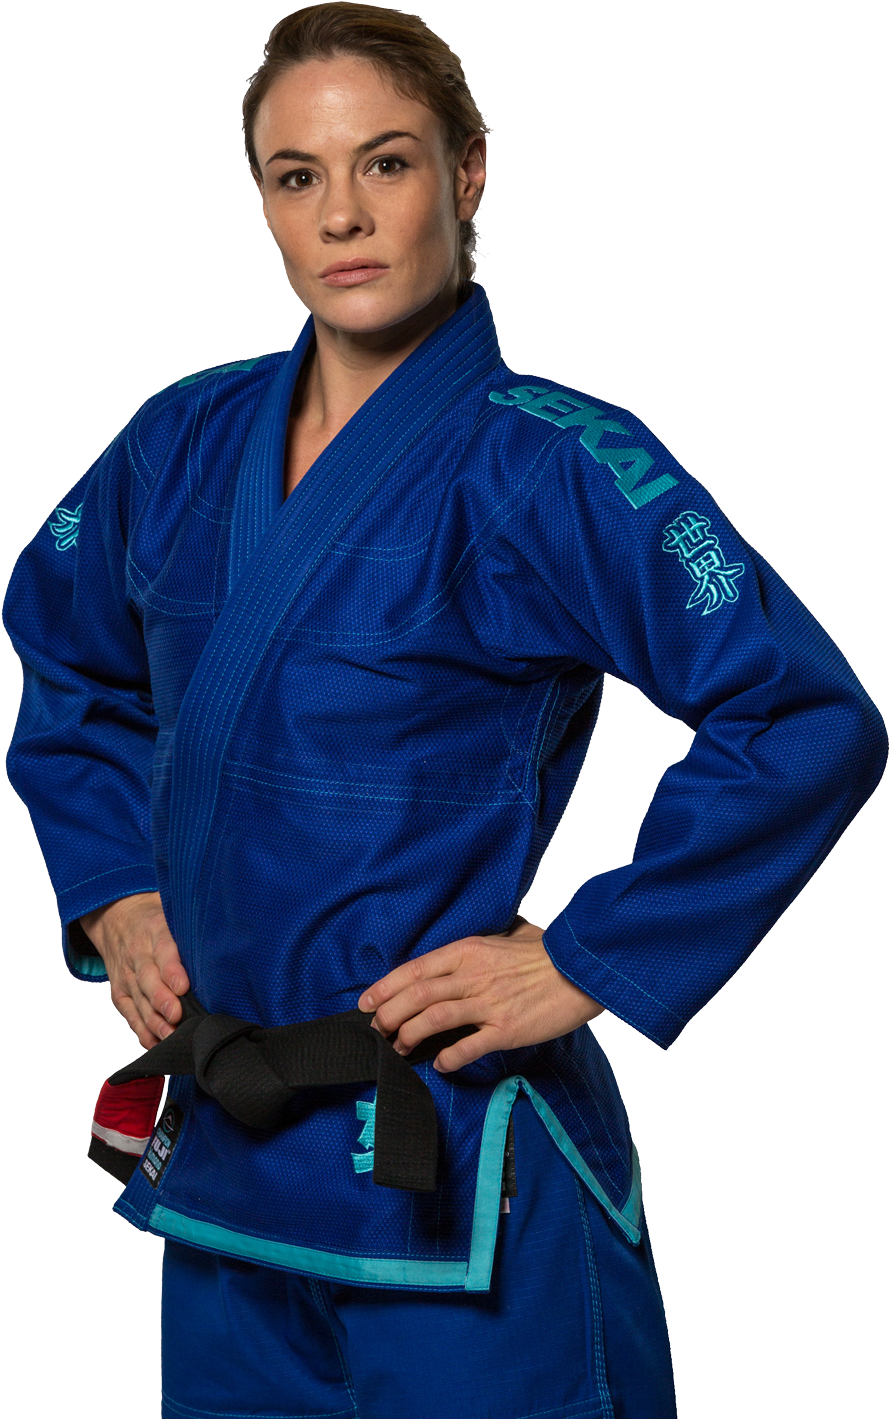 A Woman In A Blue Martial Arts Uniform